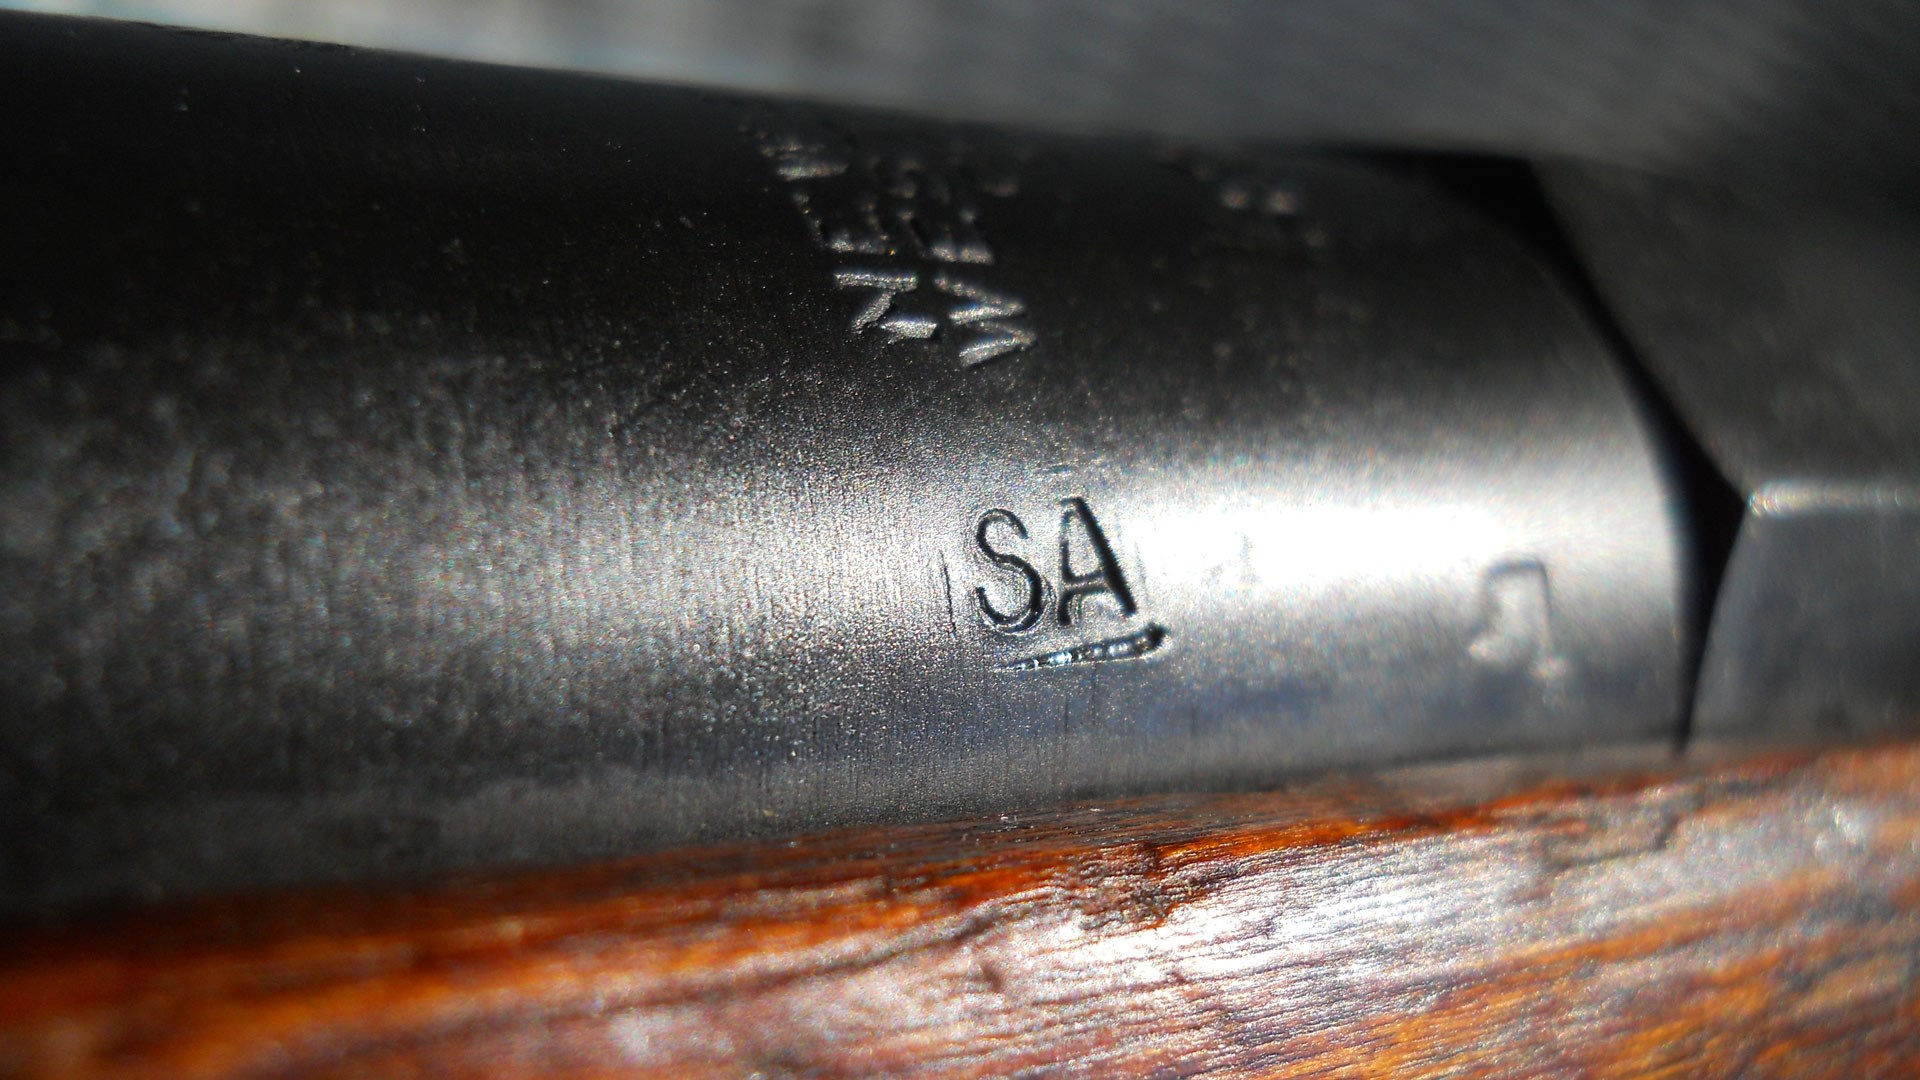 barrel marking on mosin nagant rifle "SA"